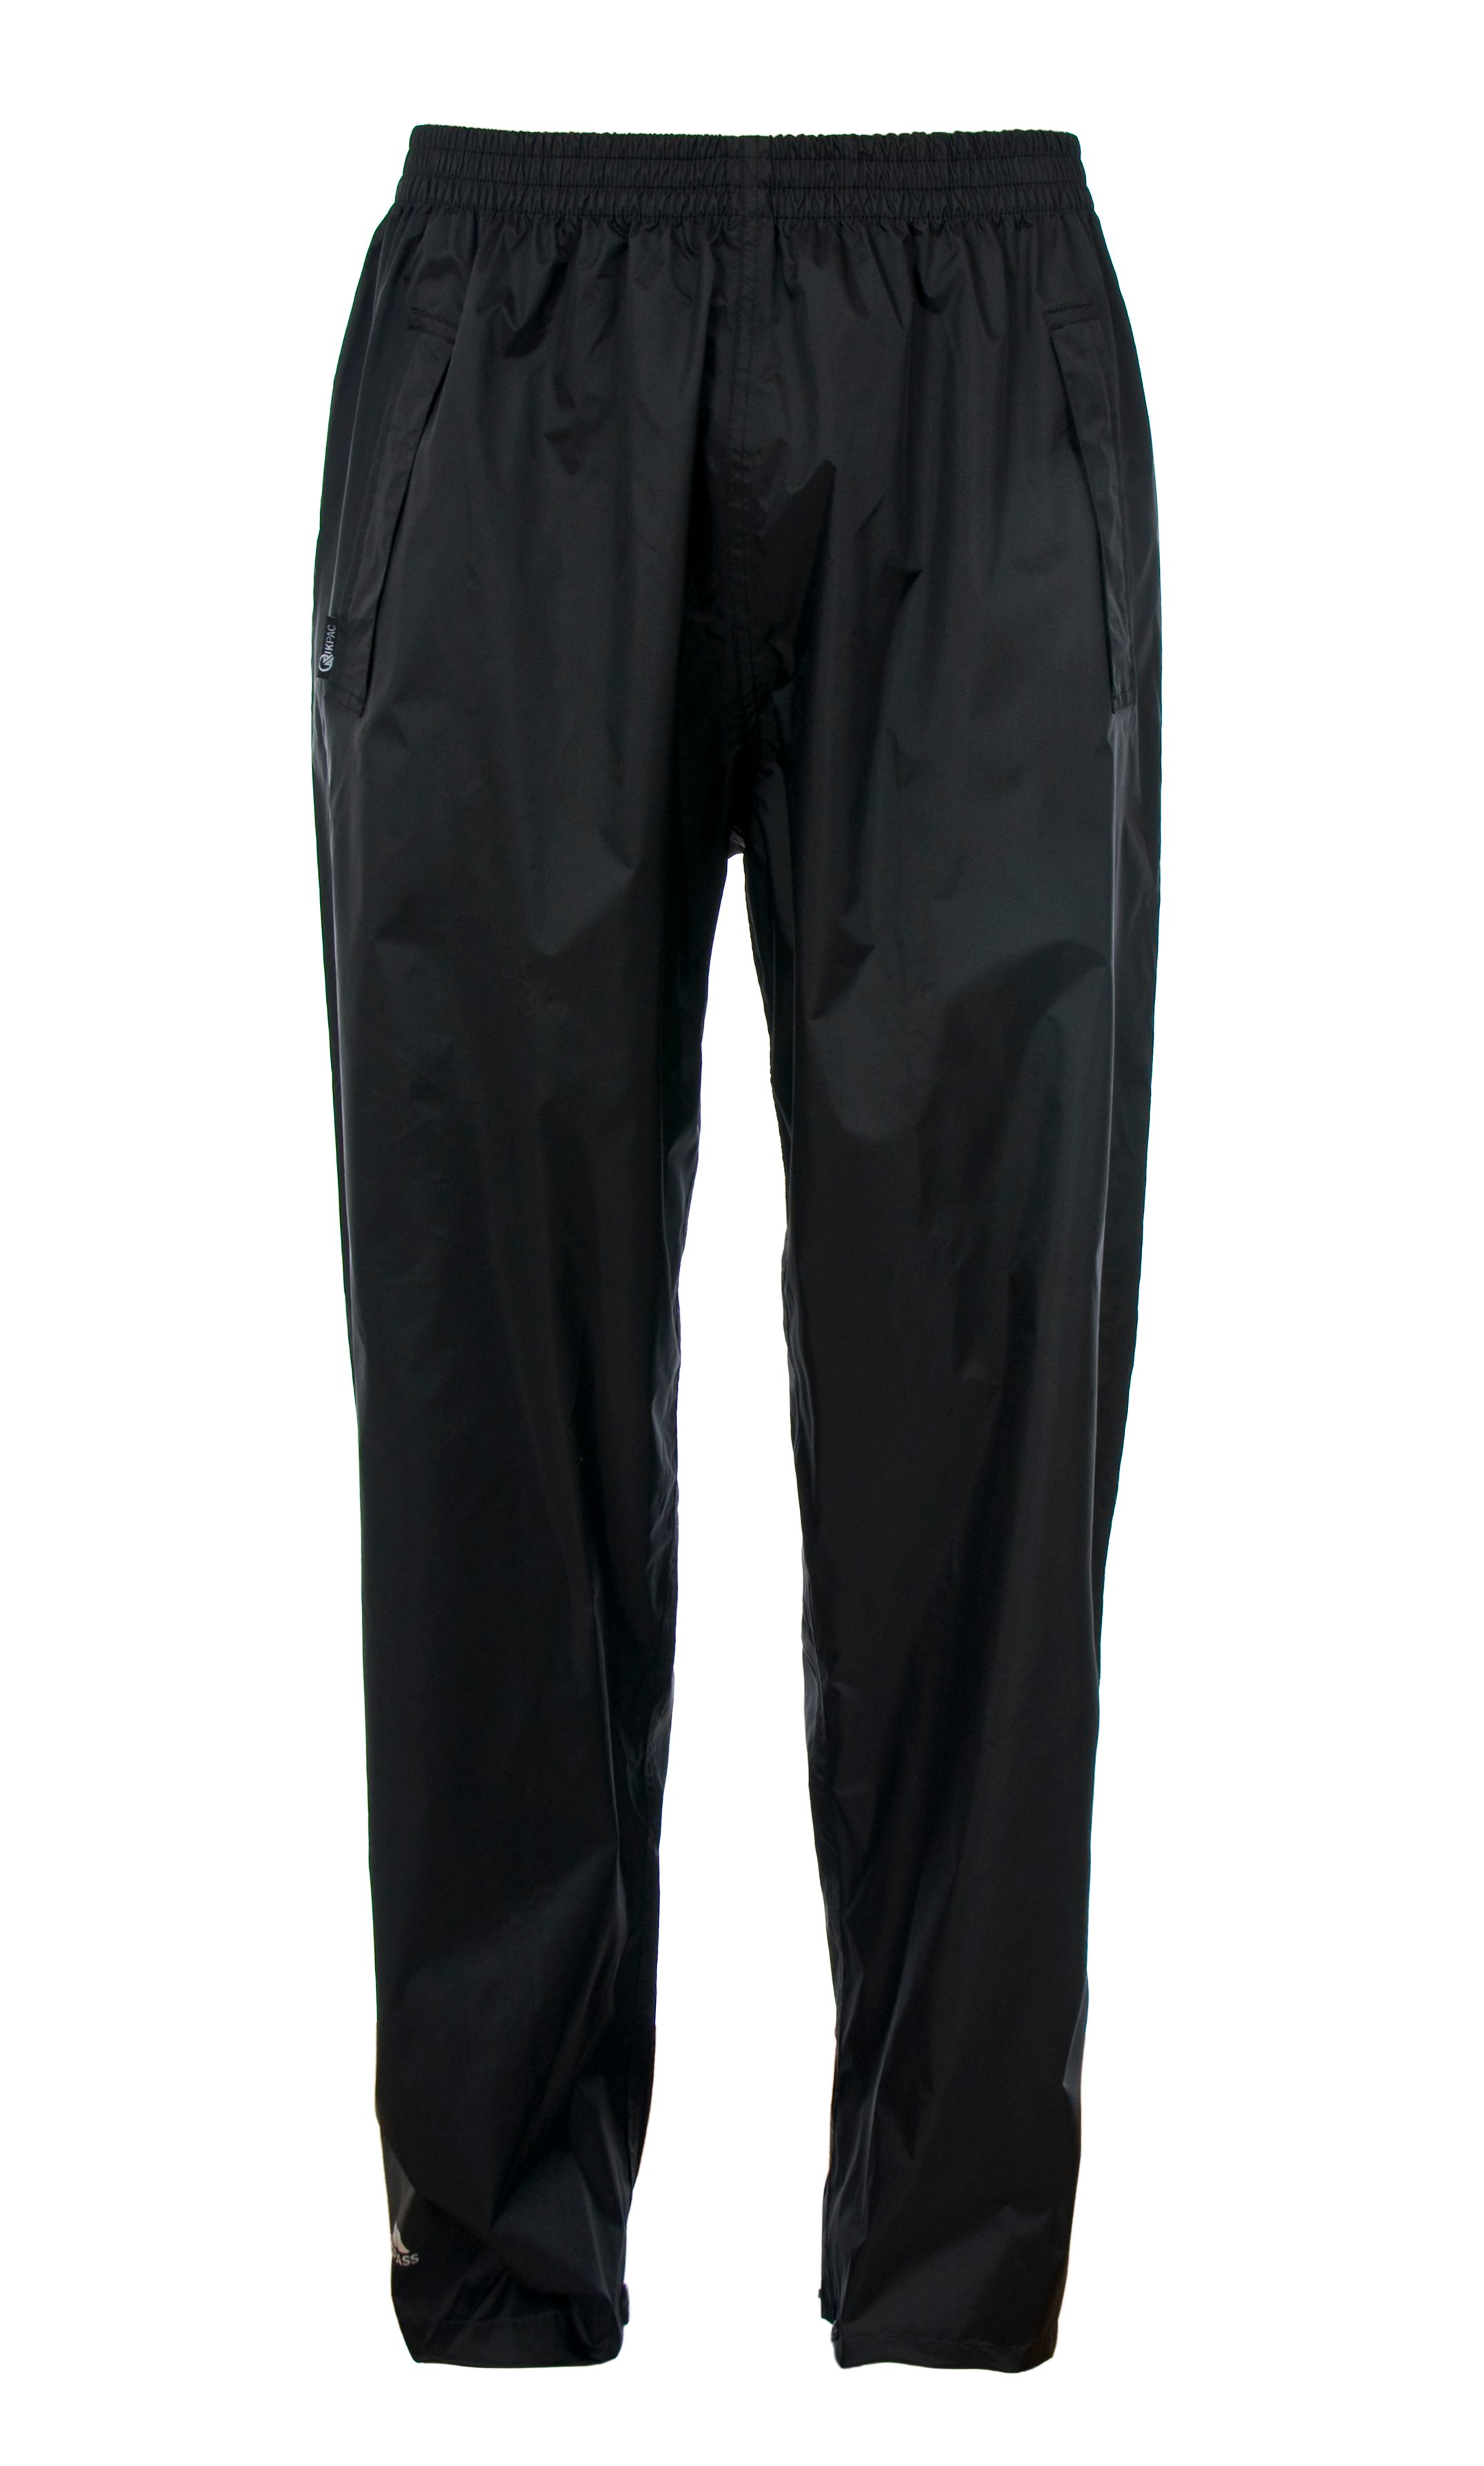 Gelert Kids Boys Packaway Trousers Junior Waterproof Pants Bottoms  Breathable  eBay